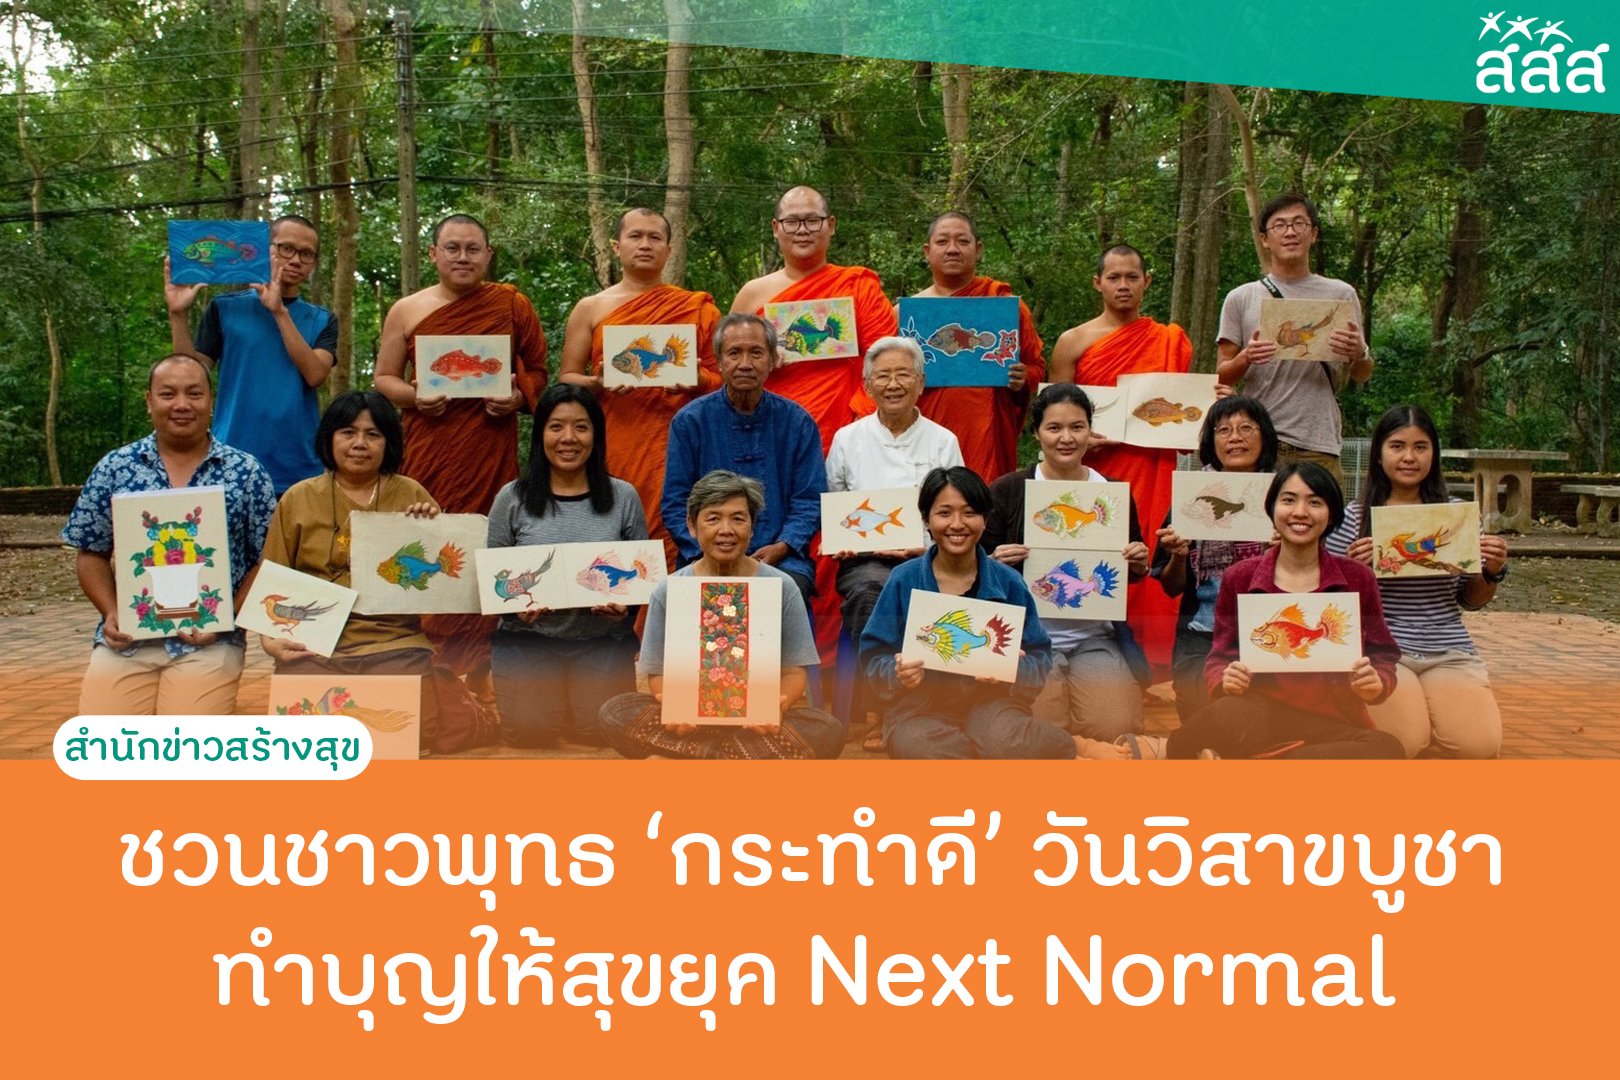 ชวนชาวพุทธ 'กระทำดี' วันวิสาขบูชา ทำบุญให้สุขยุค Next Normal thaihealth